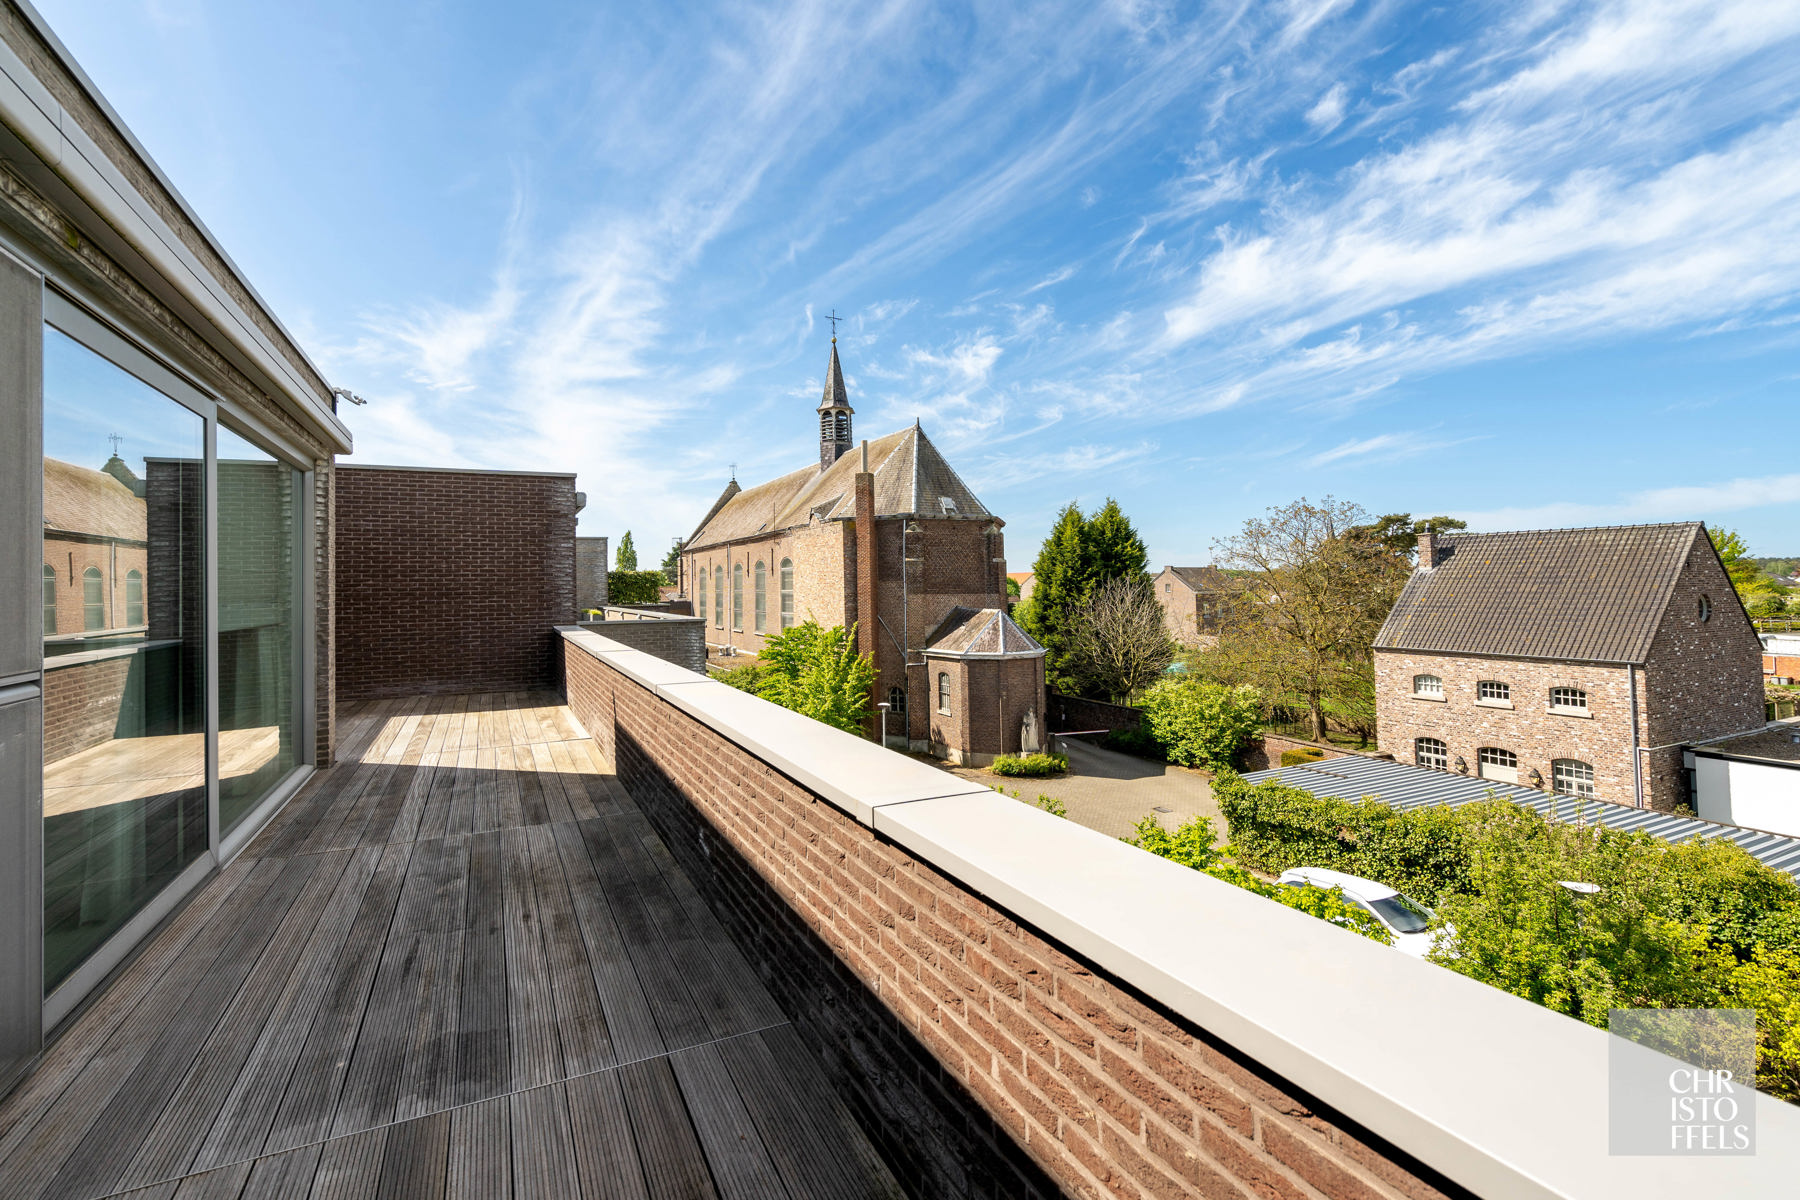  Penthouse van 186m² met een omringend terras en garagebox in Oud-Rekem! foto 21